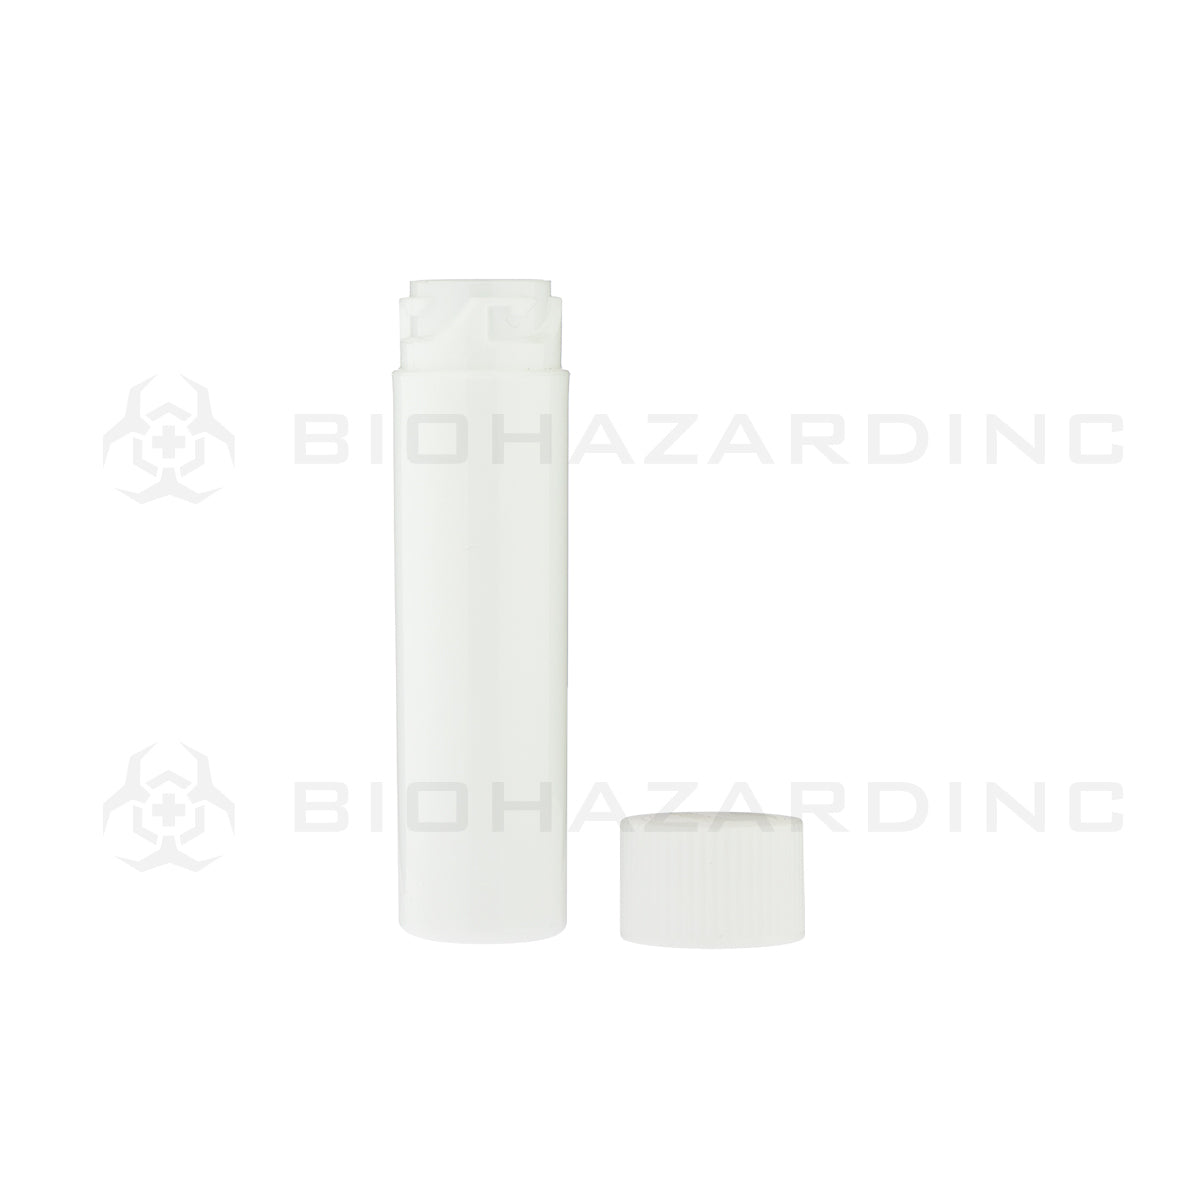 Child Resistant | Push & Turn Vape Cartridge White Tubes w/ White Caps | Various Sizes Storage Tube Biohazard Inc   